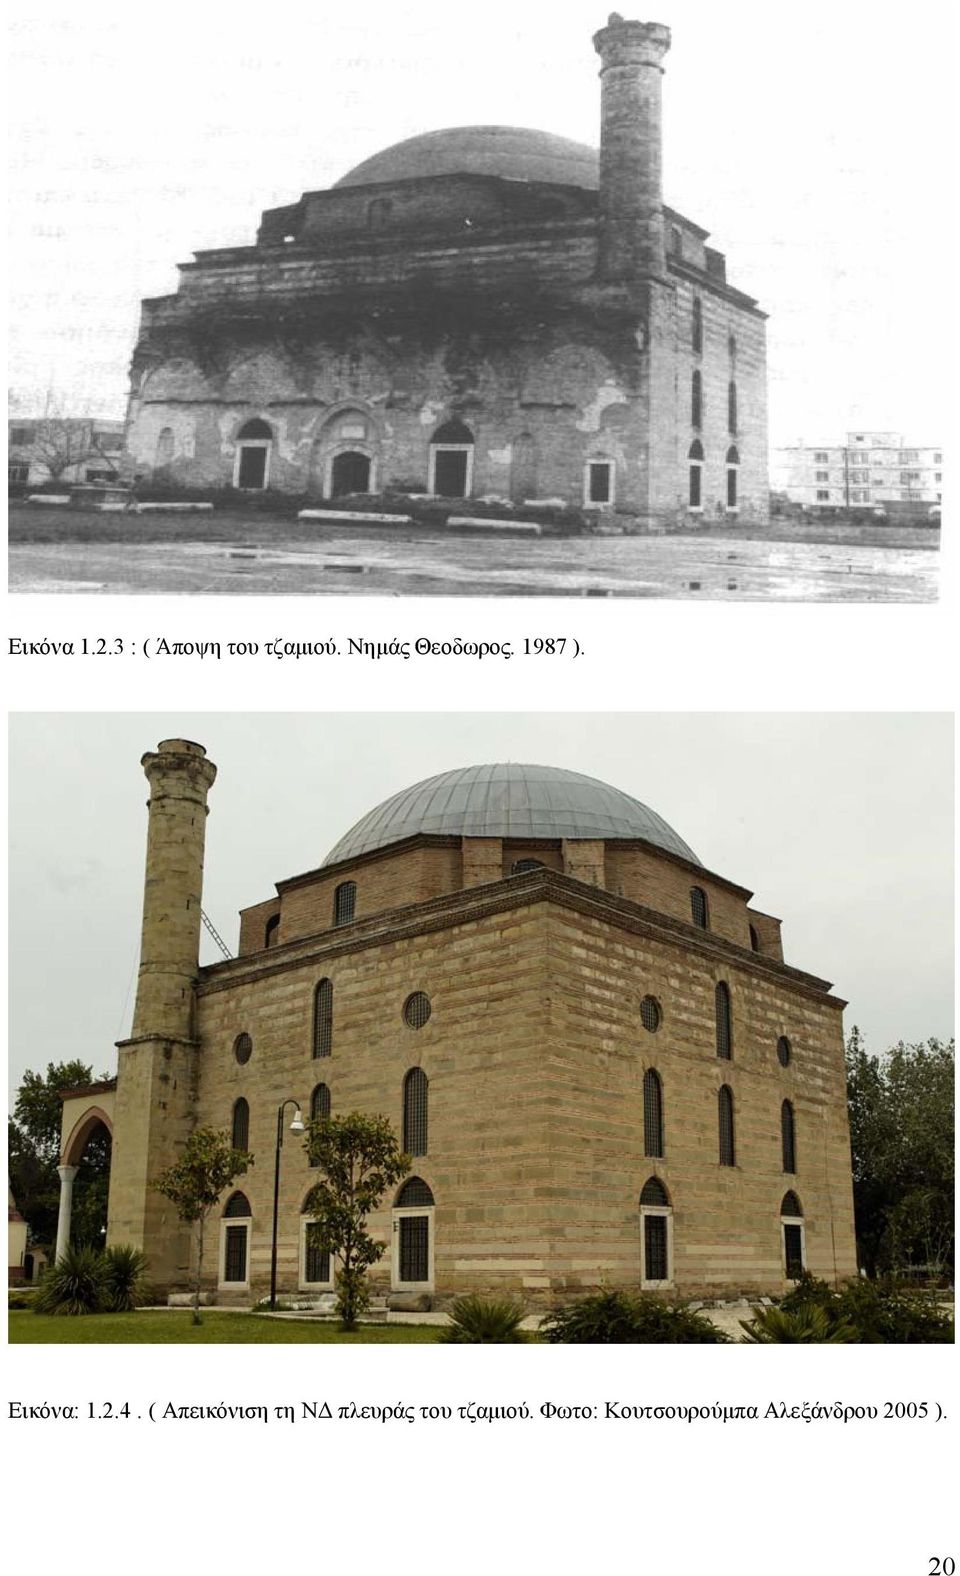 ( Απεικόνιση τη ΝΔ πλευράς του τζαμιού.